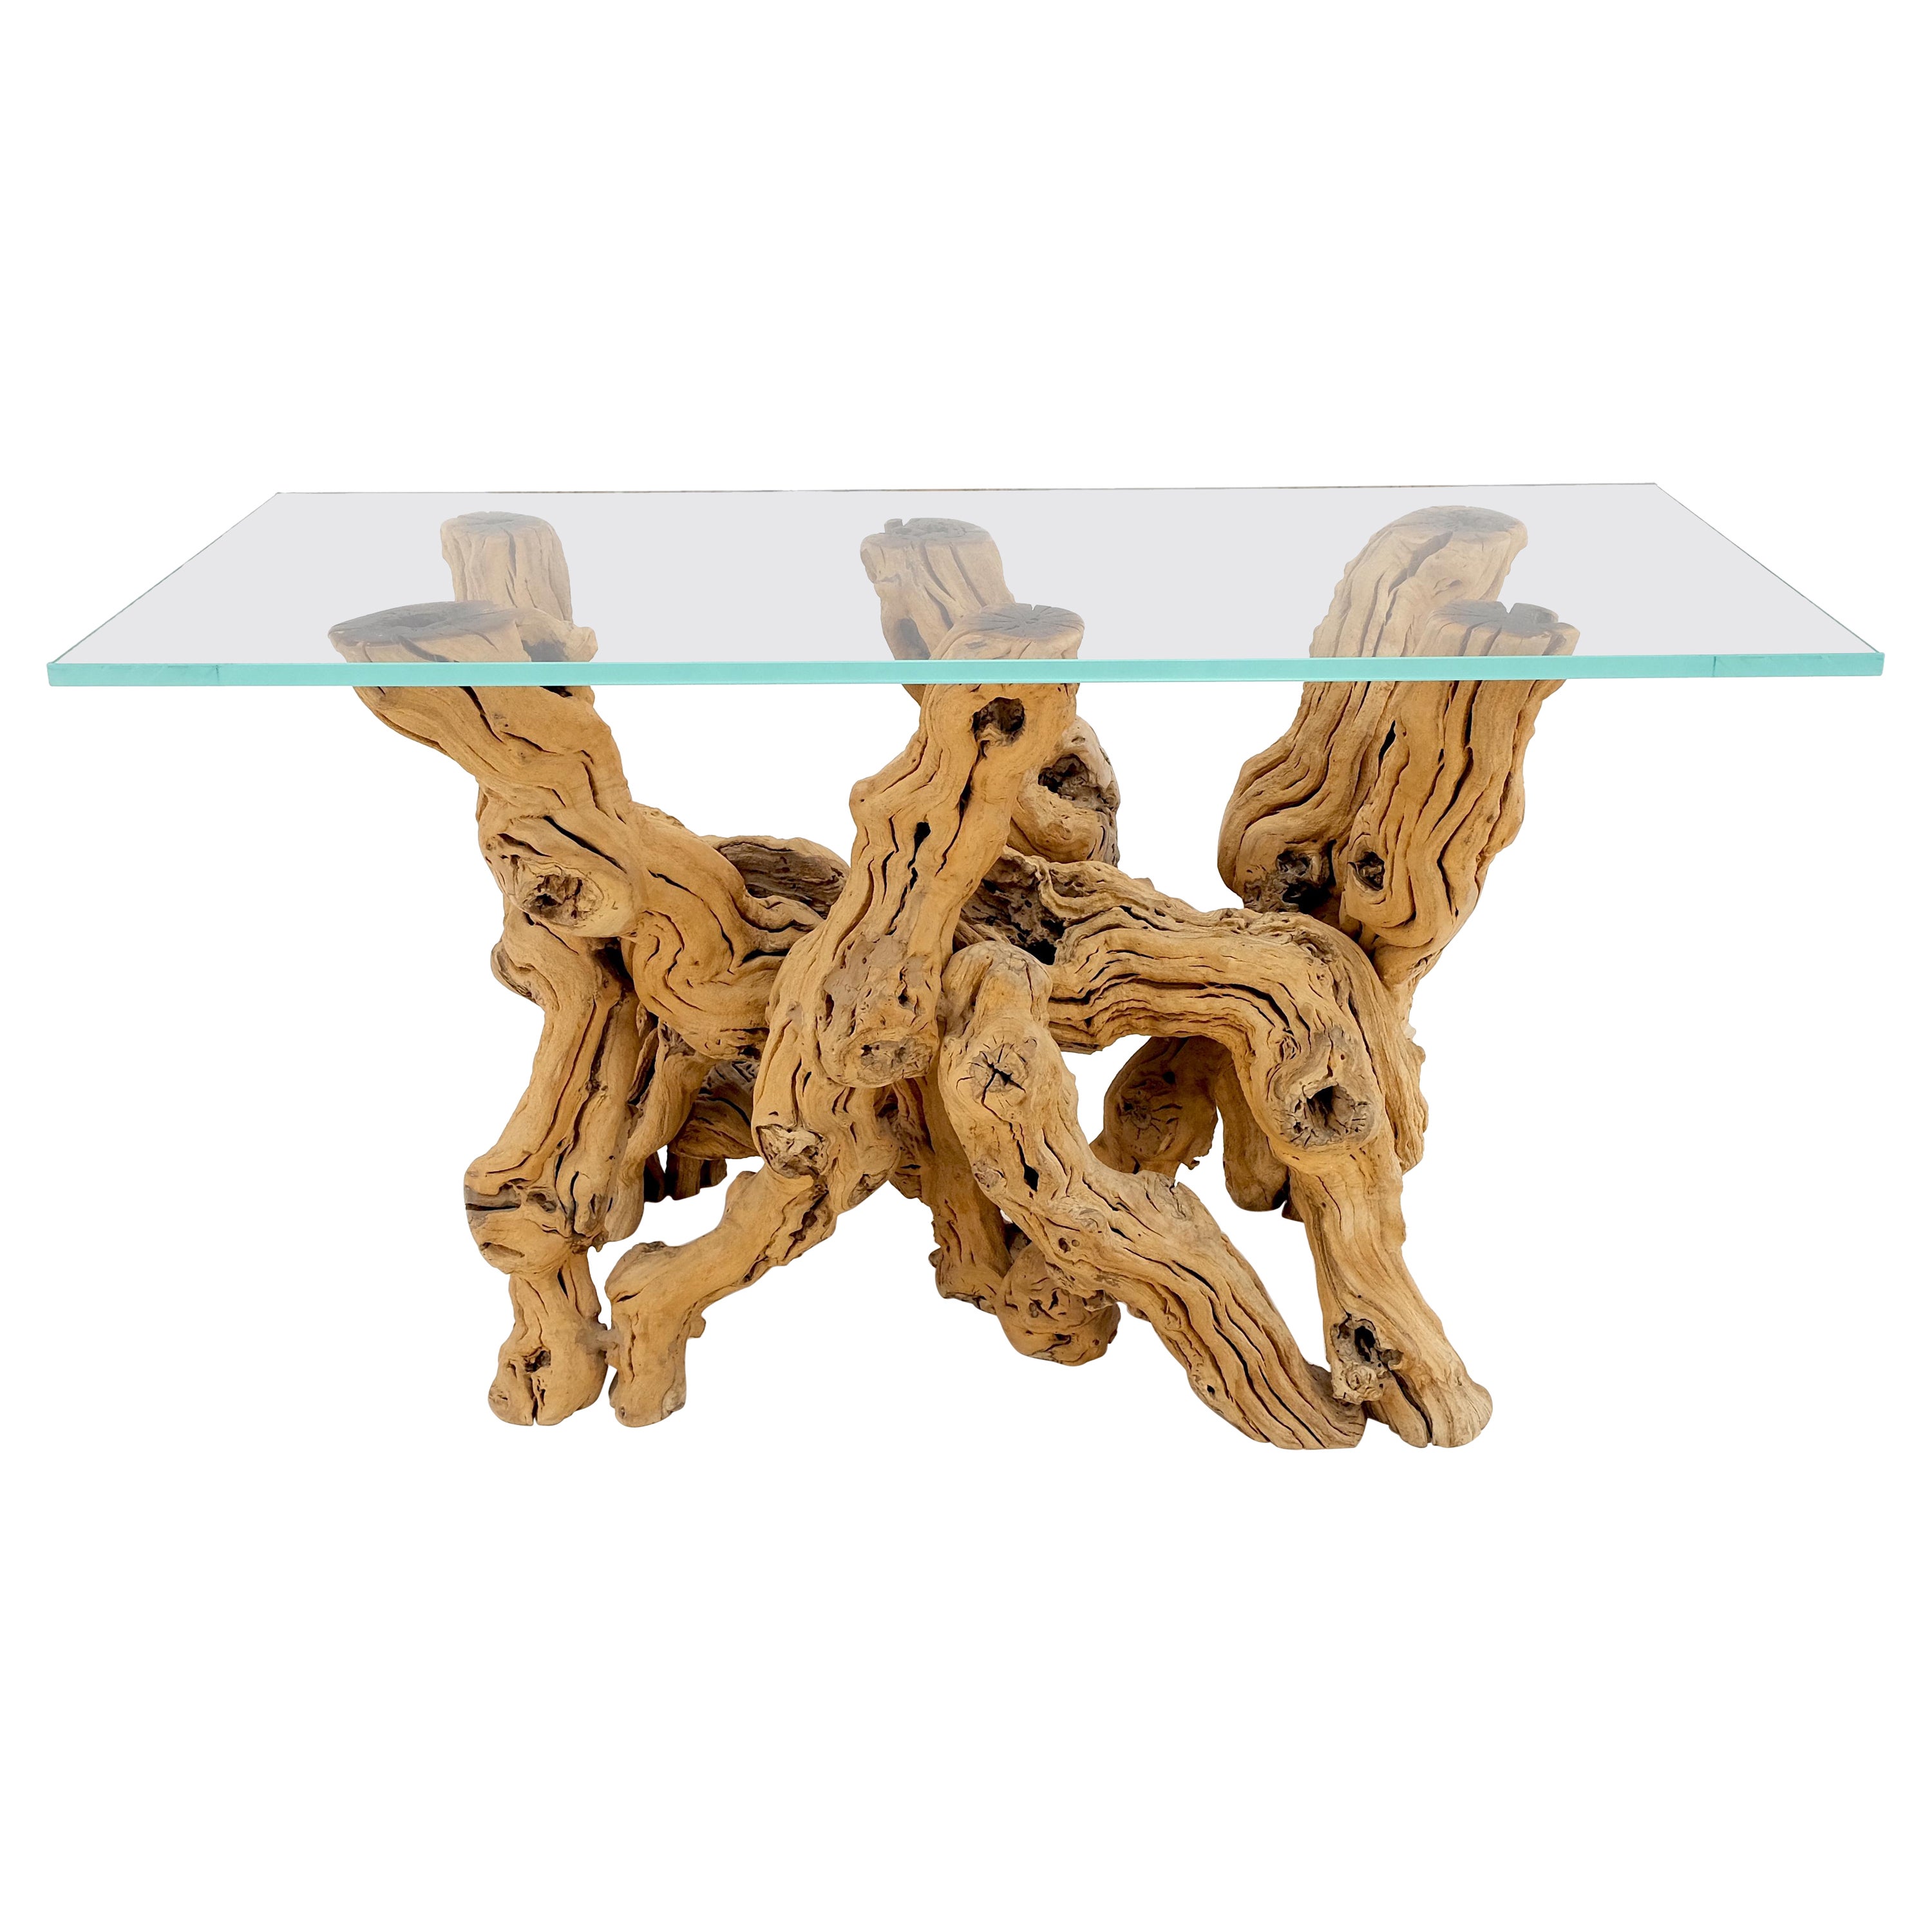 Grand bois flotté verni à base organique rectangulaire  Table console en verre MINT !